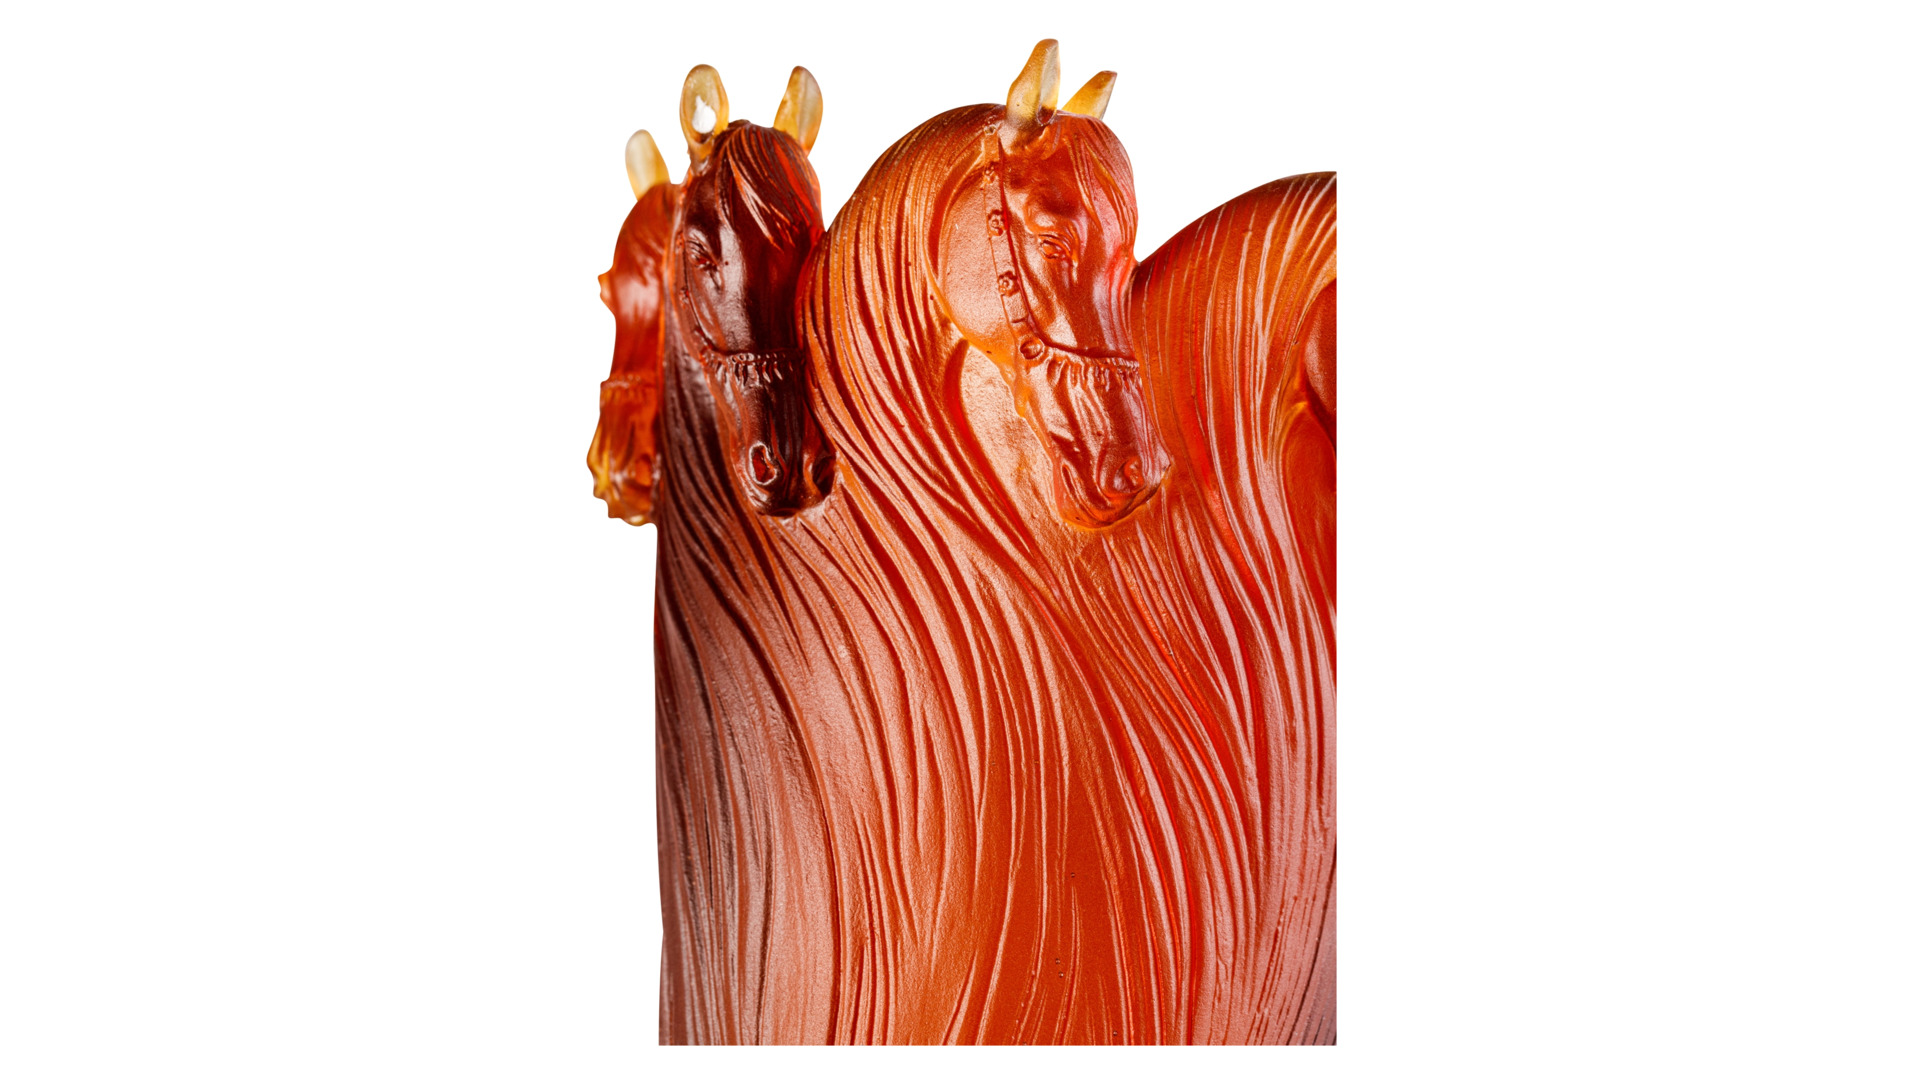 Ваза Cristal de Paris Королевская лошадь 20 см, янтарная